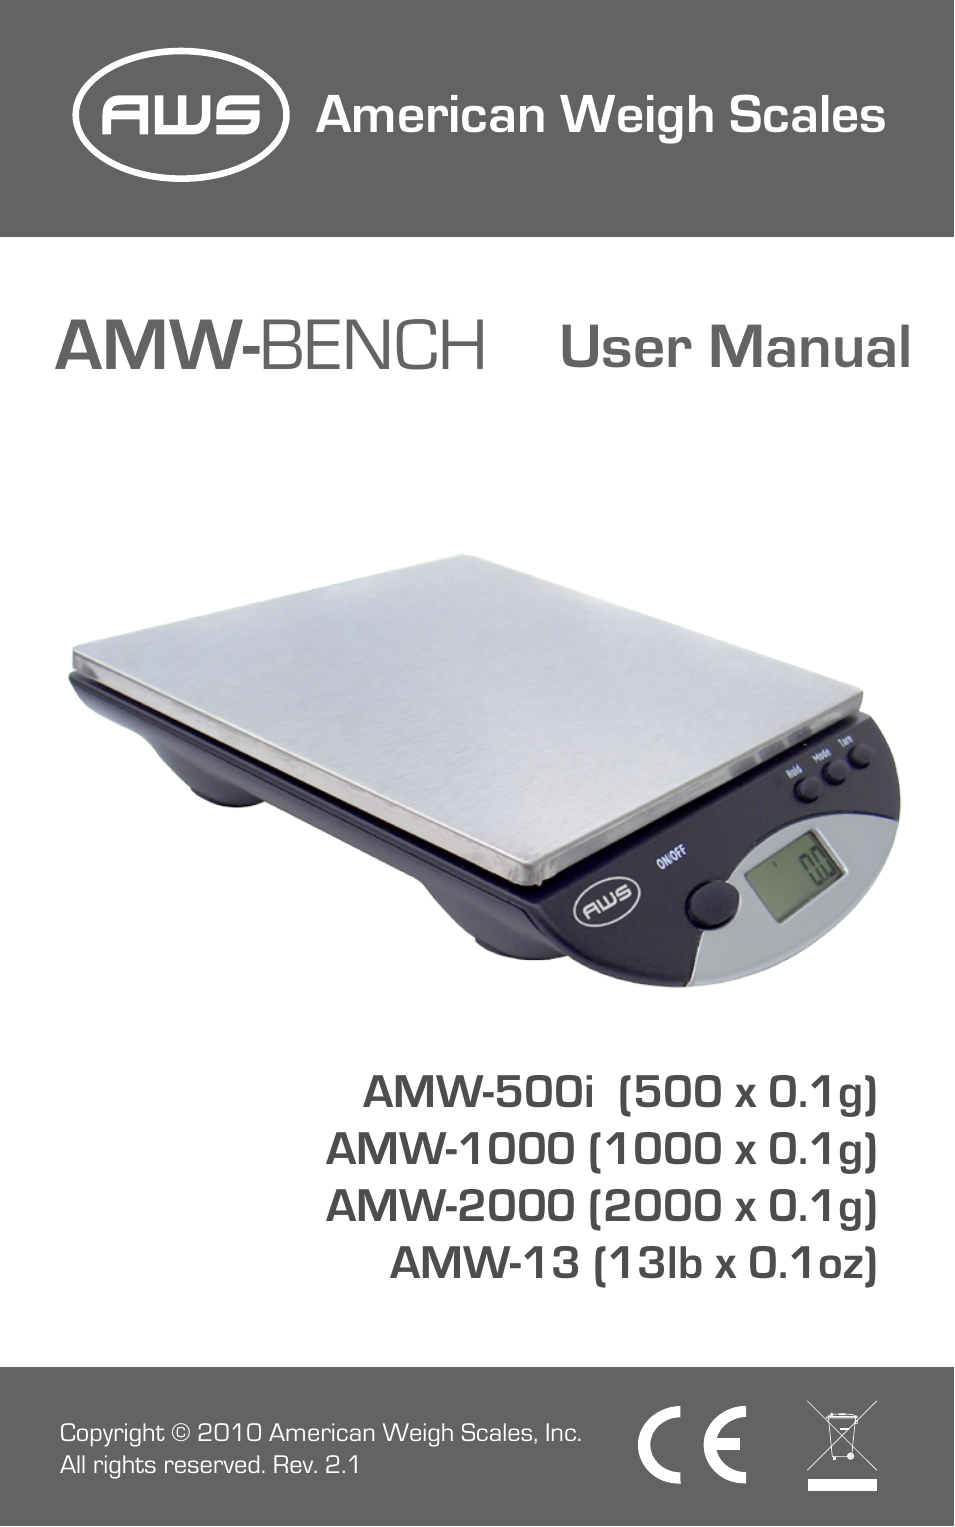 AMW-2000